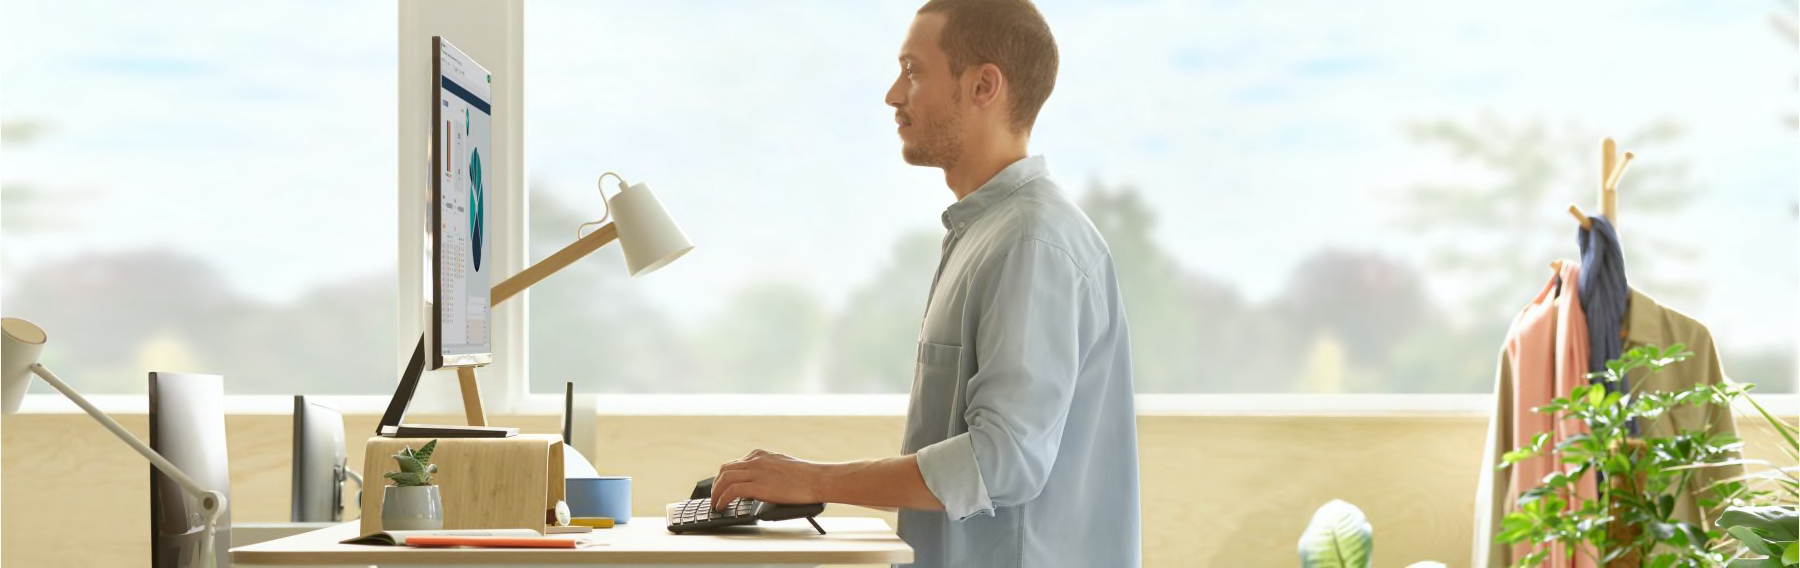 En medarbejder bruger et ergonomisk tastatur, mens vedkommende står op